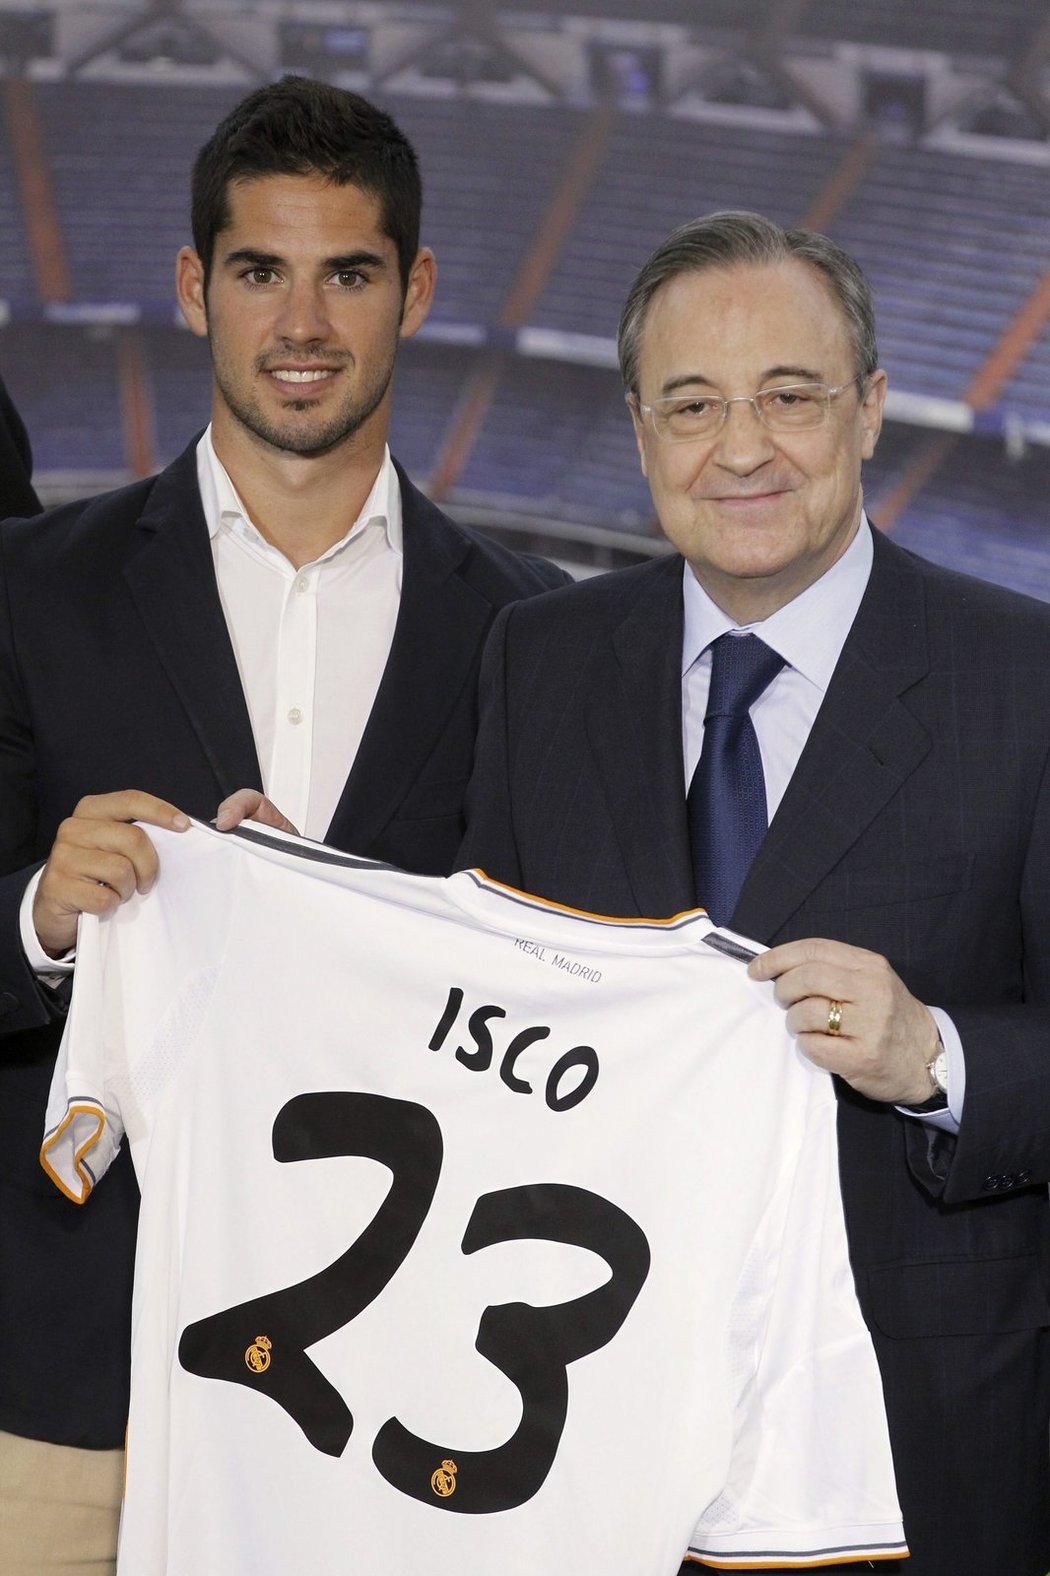 Zlatý chlapec Isco byl představen jako posila Realu Madrid. S dresem Bílého baletu zapózoval fotografům